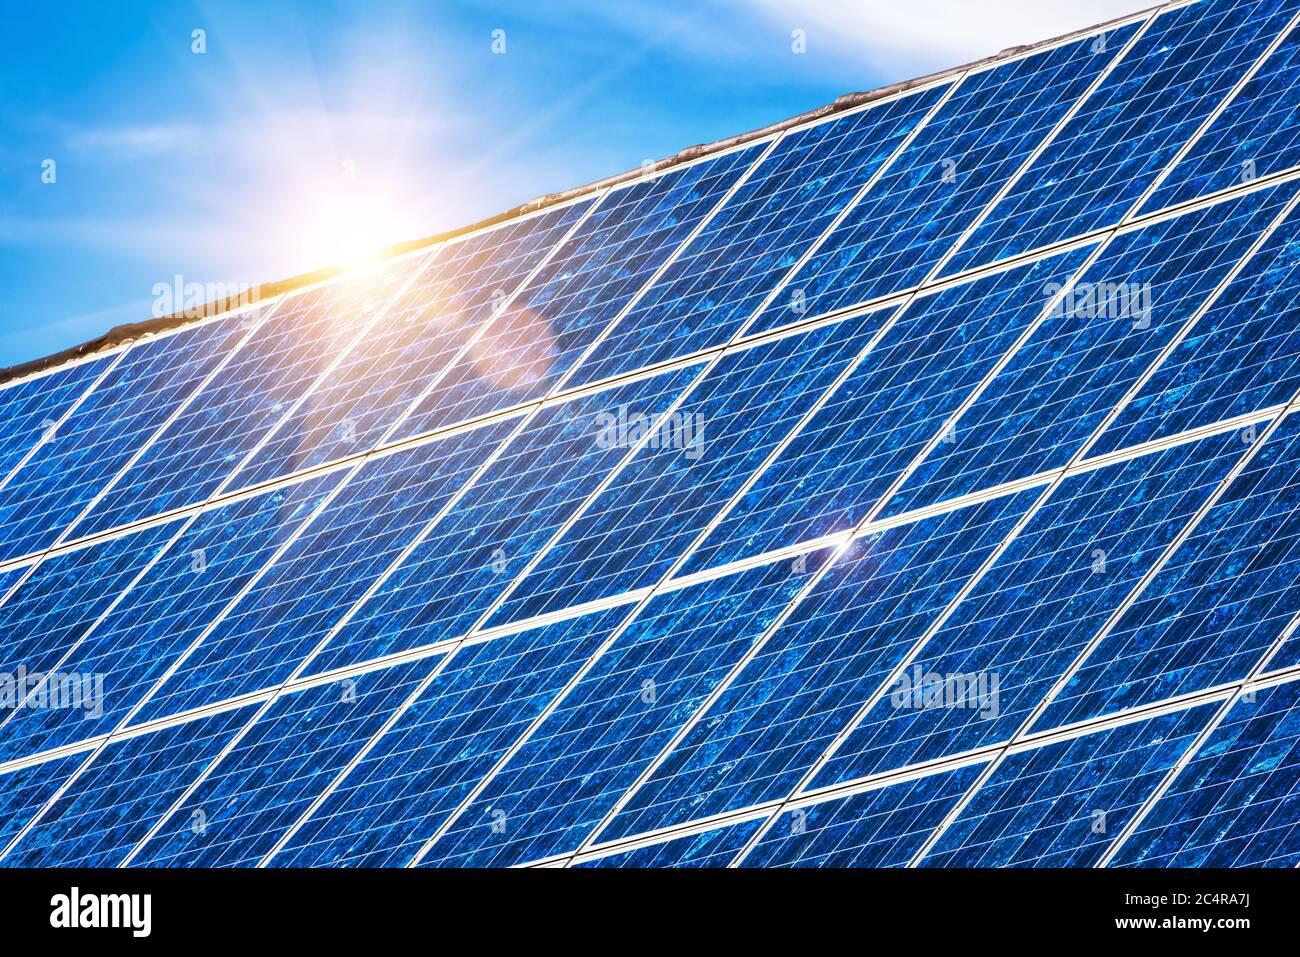 Solarpanel auf Wohnhausdach. Viele blaue Solarzellen auf dem Gebäudetisch für alternative Energie. Photovoltaik-Öko-Paneele für Strom aus s Stockfoto